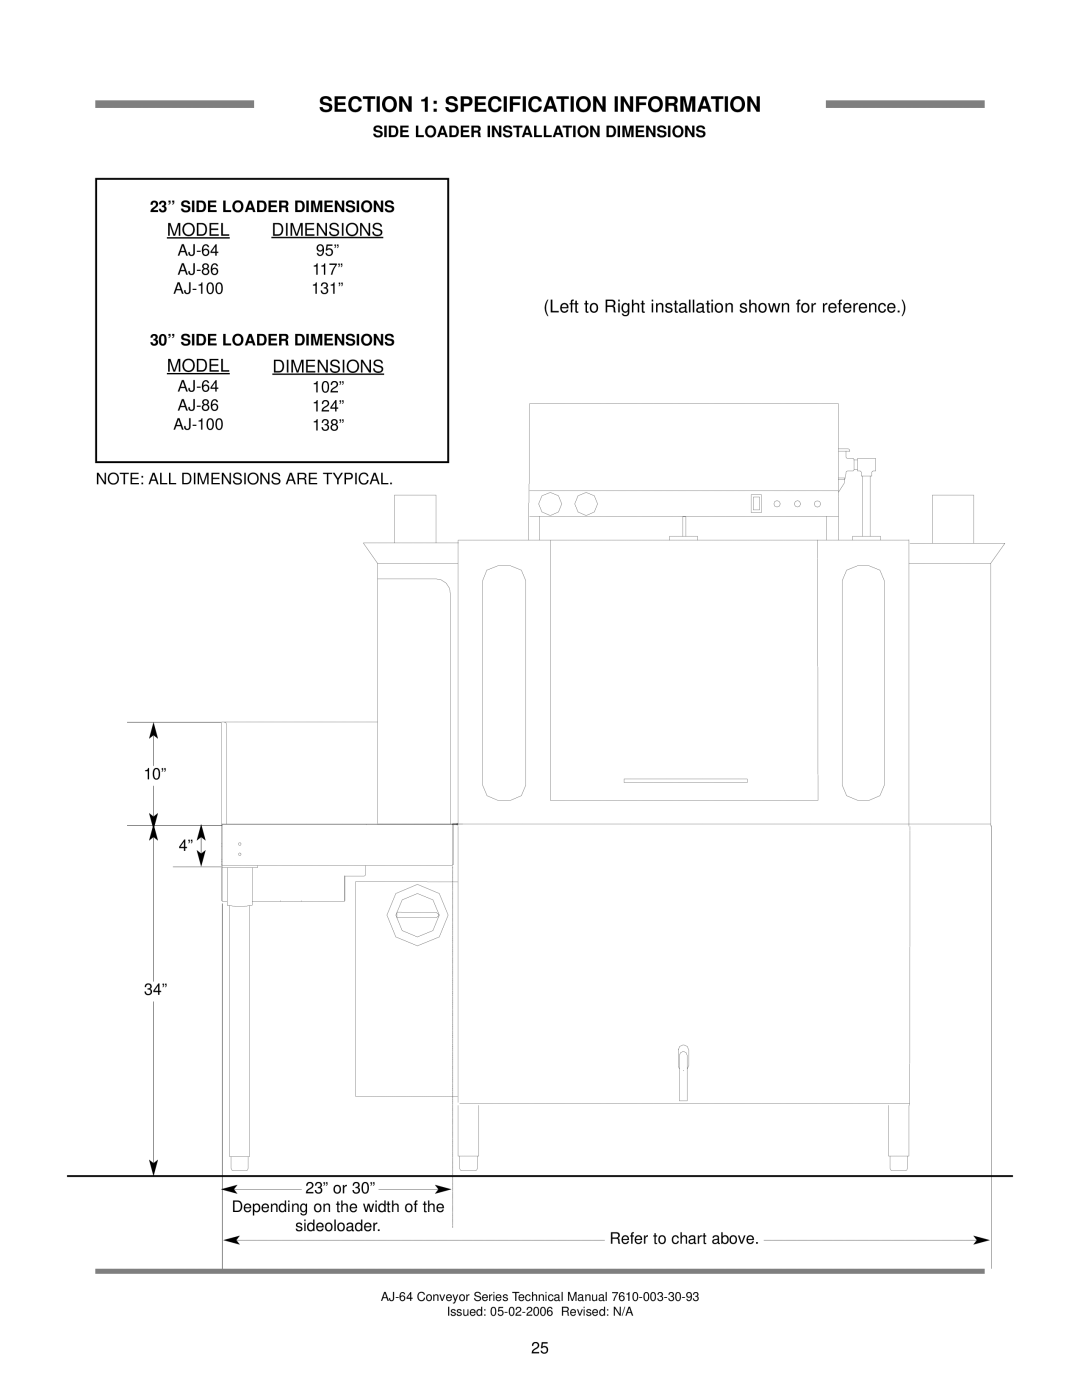 Jackson AJ-64CS Side Loader Installation Dimensions, 23” SIDE LOADER DIMENSIONS, 30” SIDE LOADER DIMENSIONS, 117”, 131” 